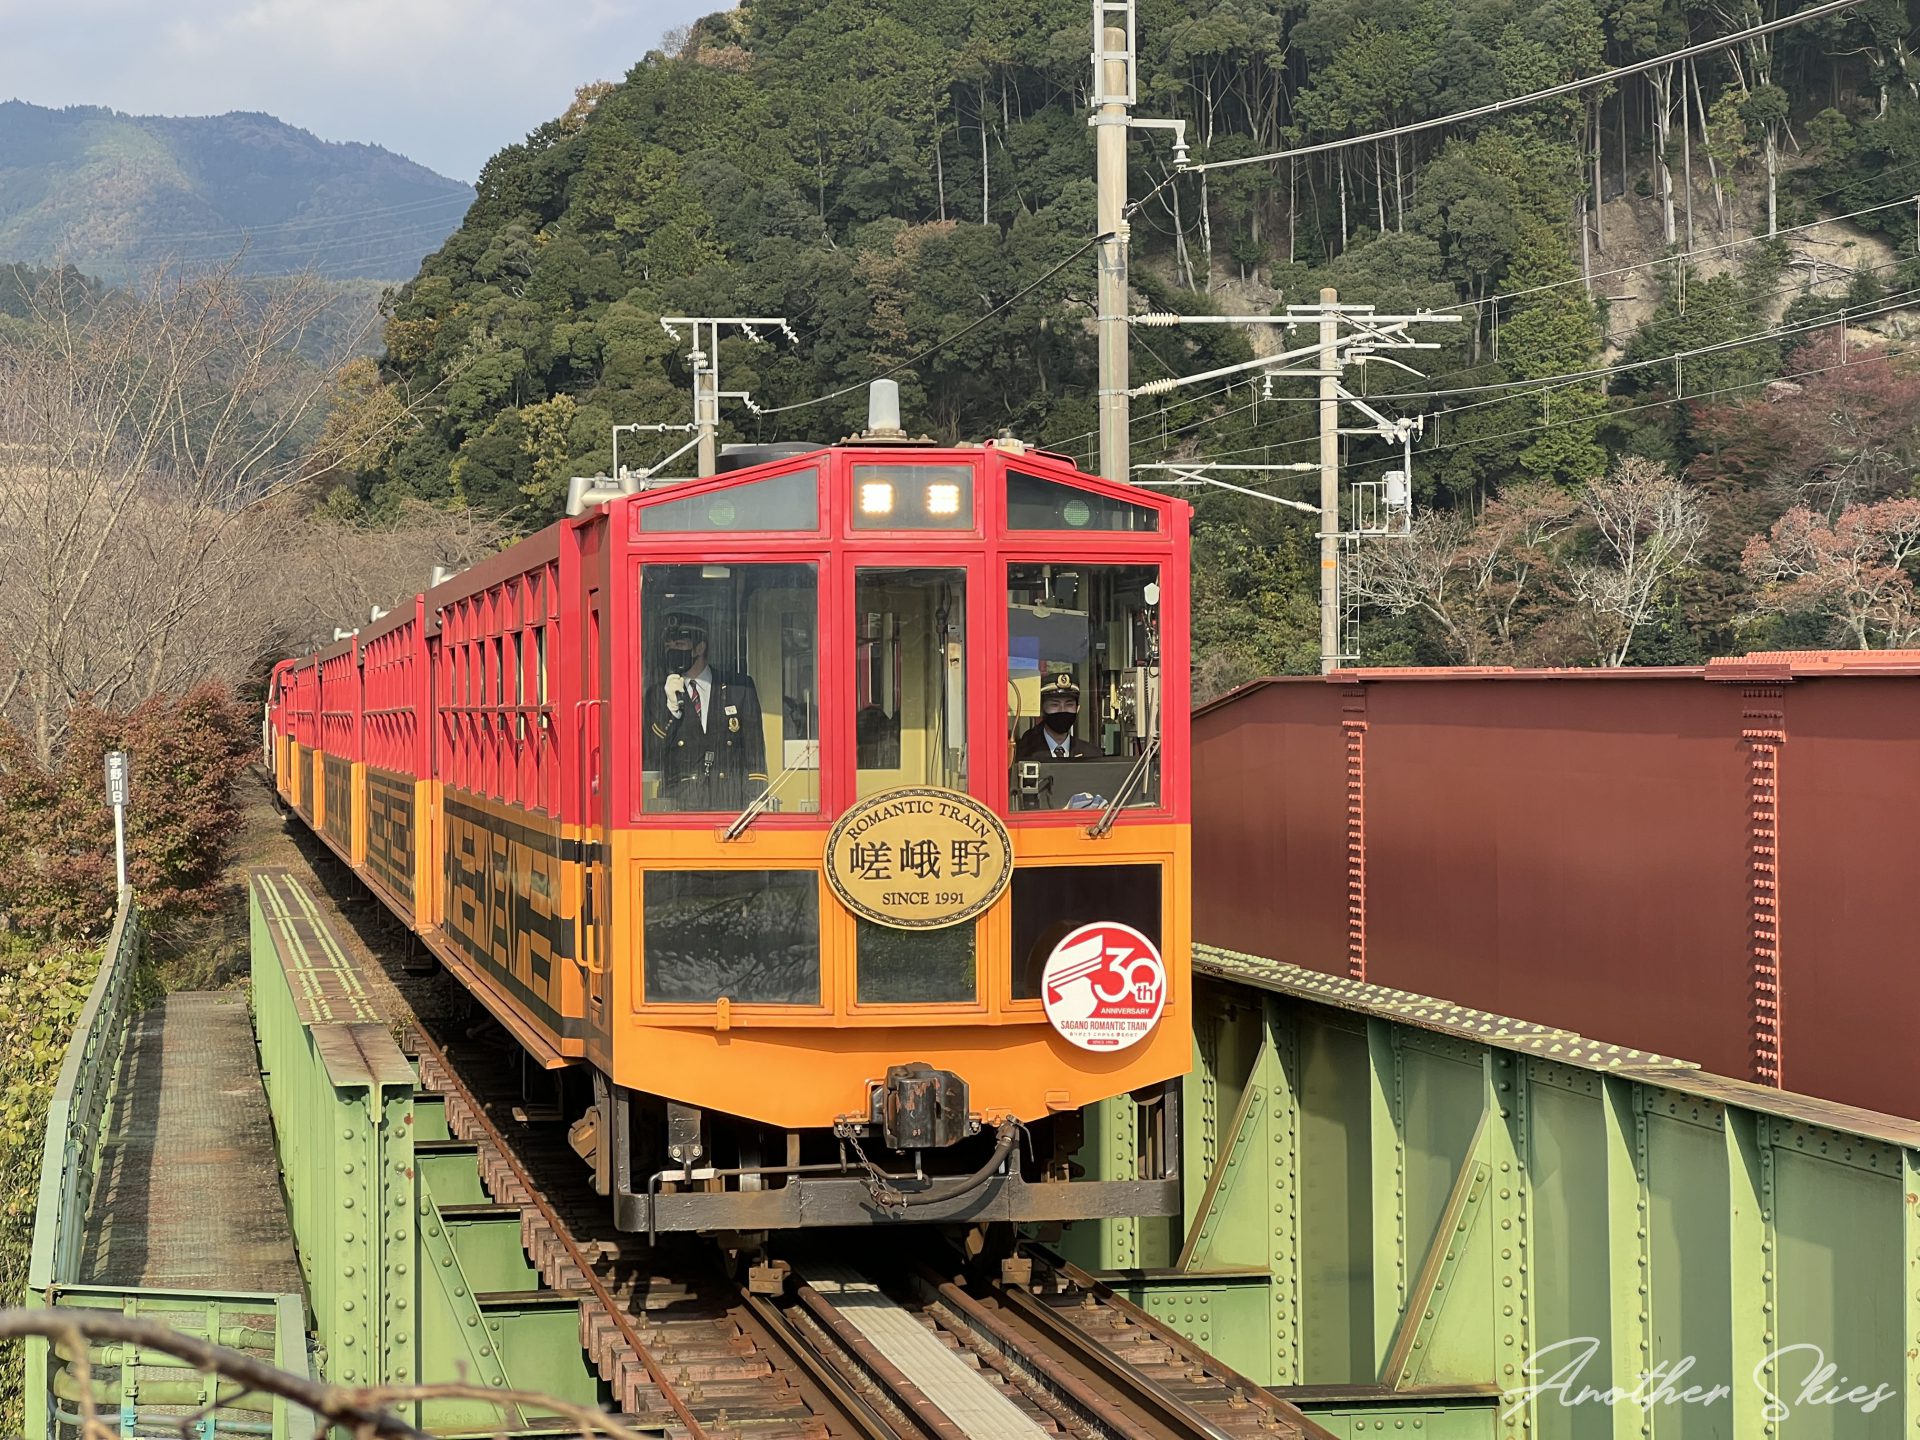 京都の紅葉 嵯峨野トロッコ列車で紅葉を楽しんできた Another Skies